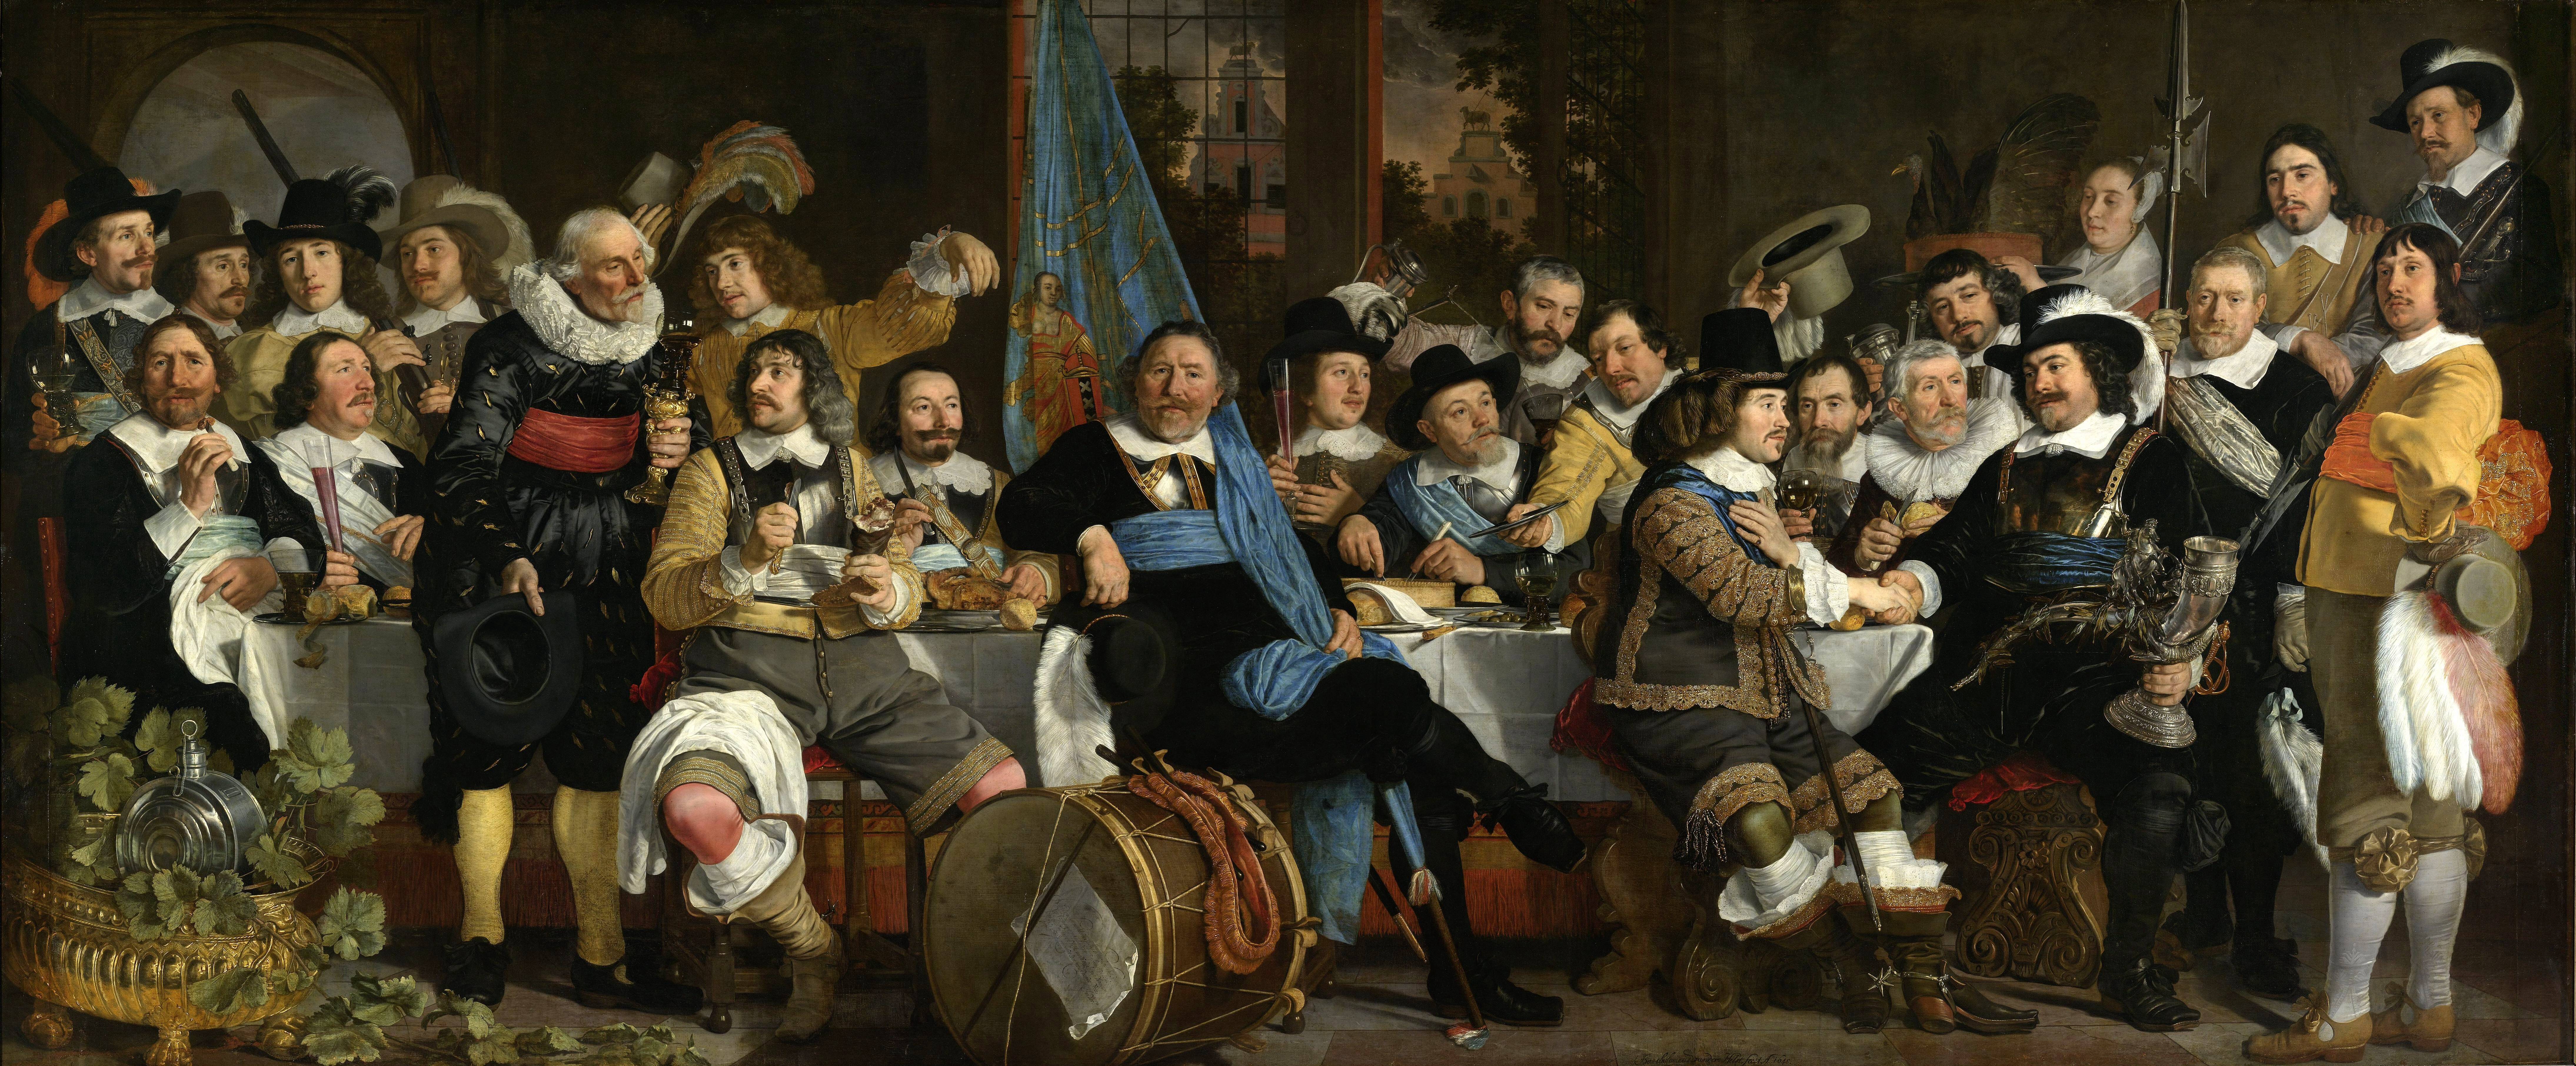 Бартоломеус ван дер Хелст. Торжество по поводу подписания Мюнстерского договора. 1648 год. Рейксмюсеум, Амстердам.